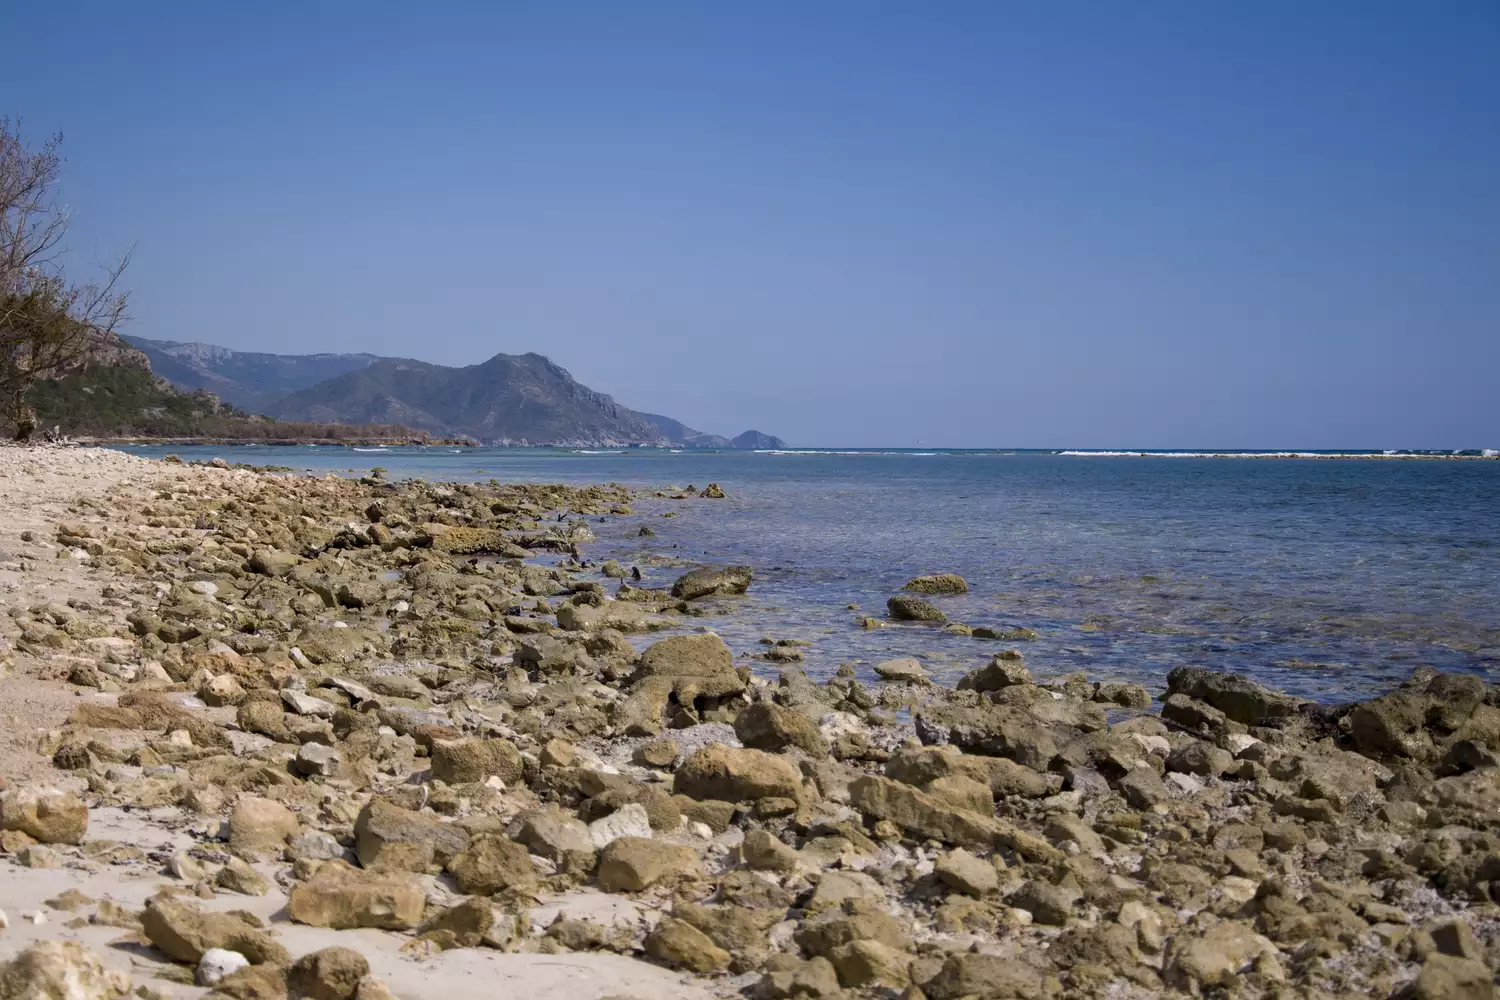 Пляж, покрытый большими камнями, у берега серо-голубого океана